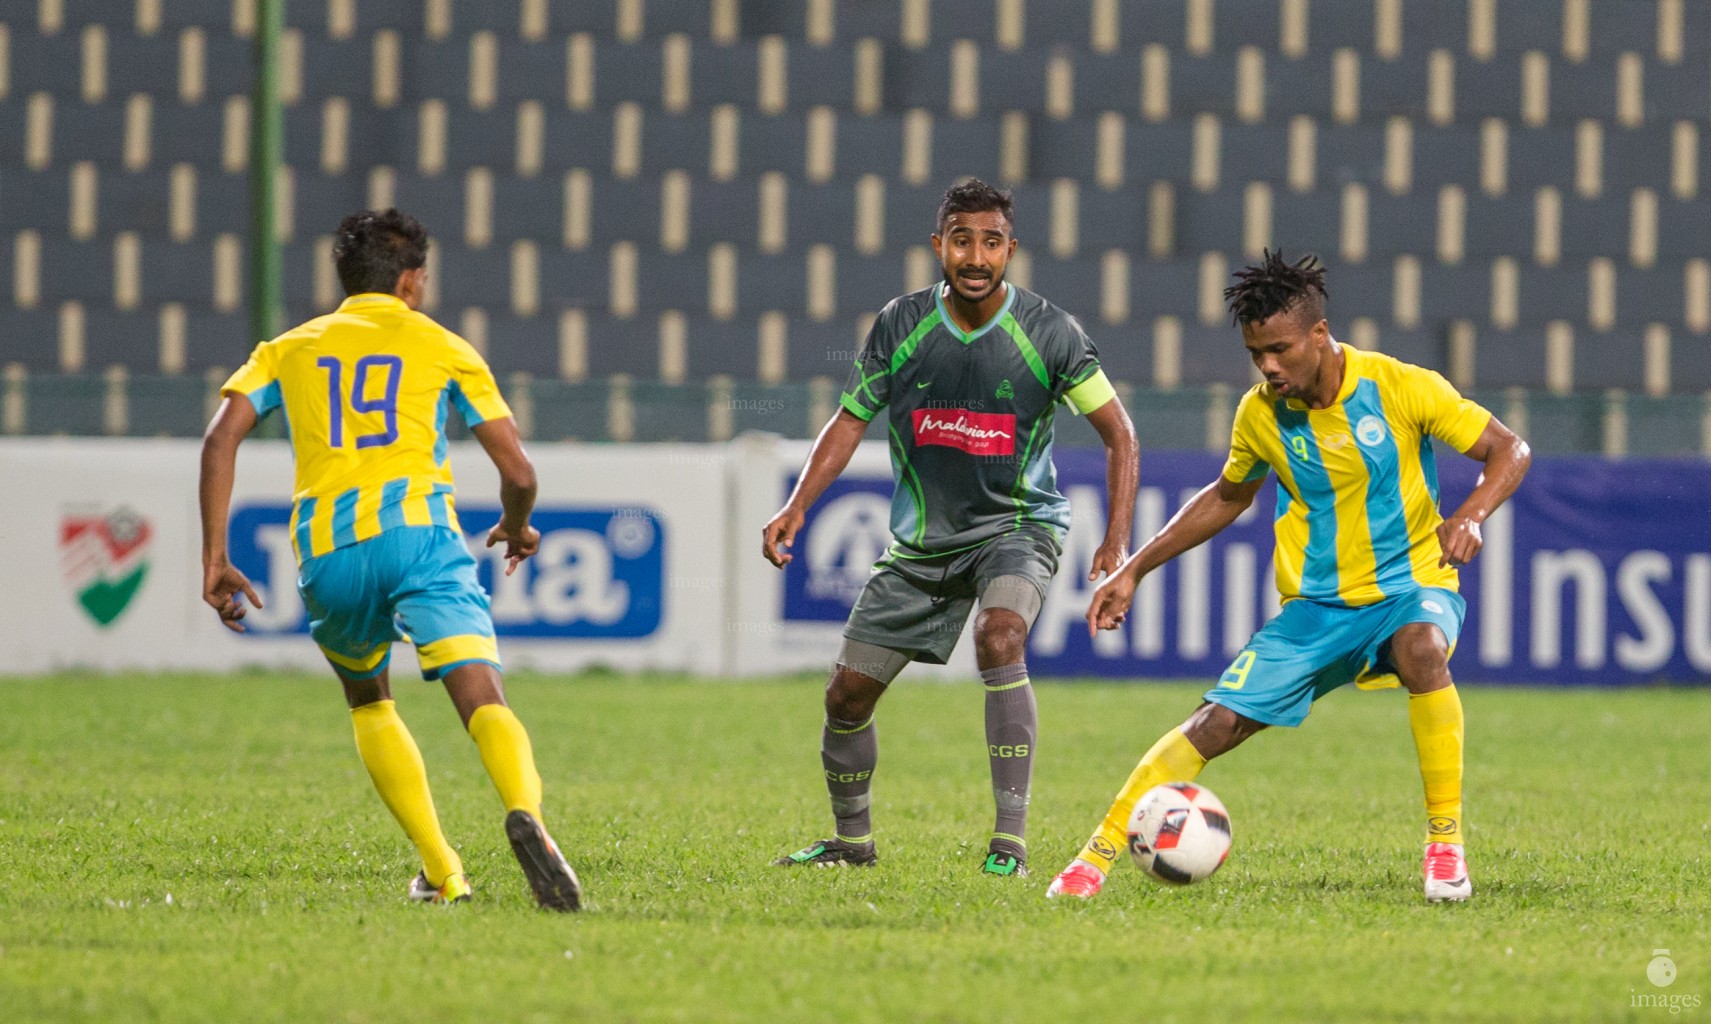 Greenstreet vs Club Valencia in the second round of STO Male League. Male', Maldives. Saturday 24 June 2017. (Images.mv Photo/ Abdulla Abeedh).